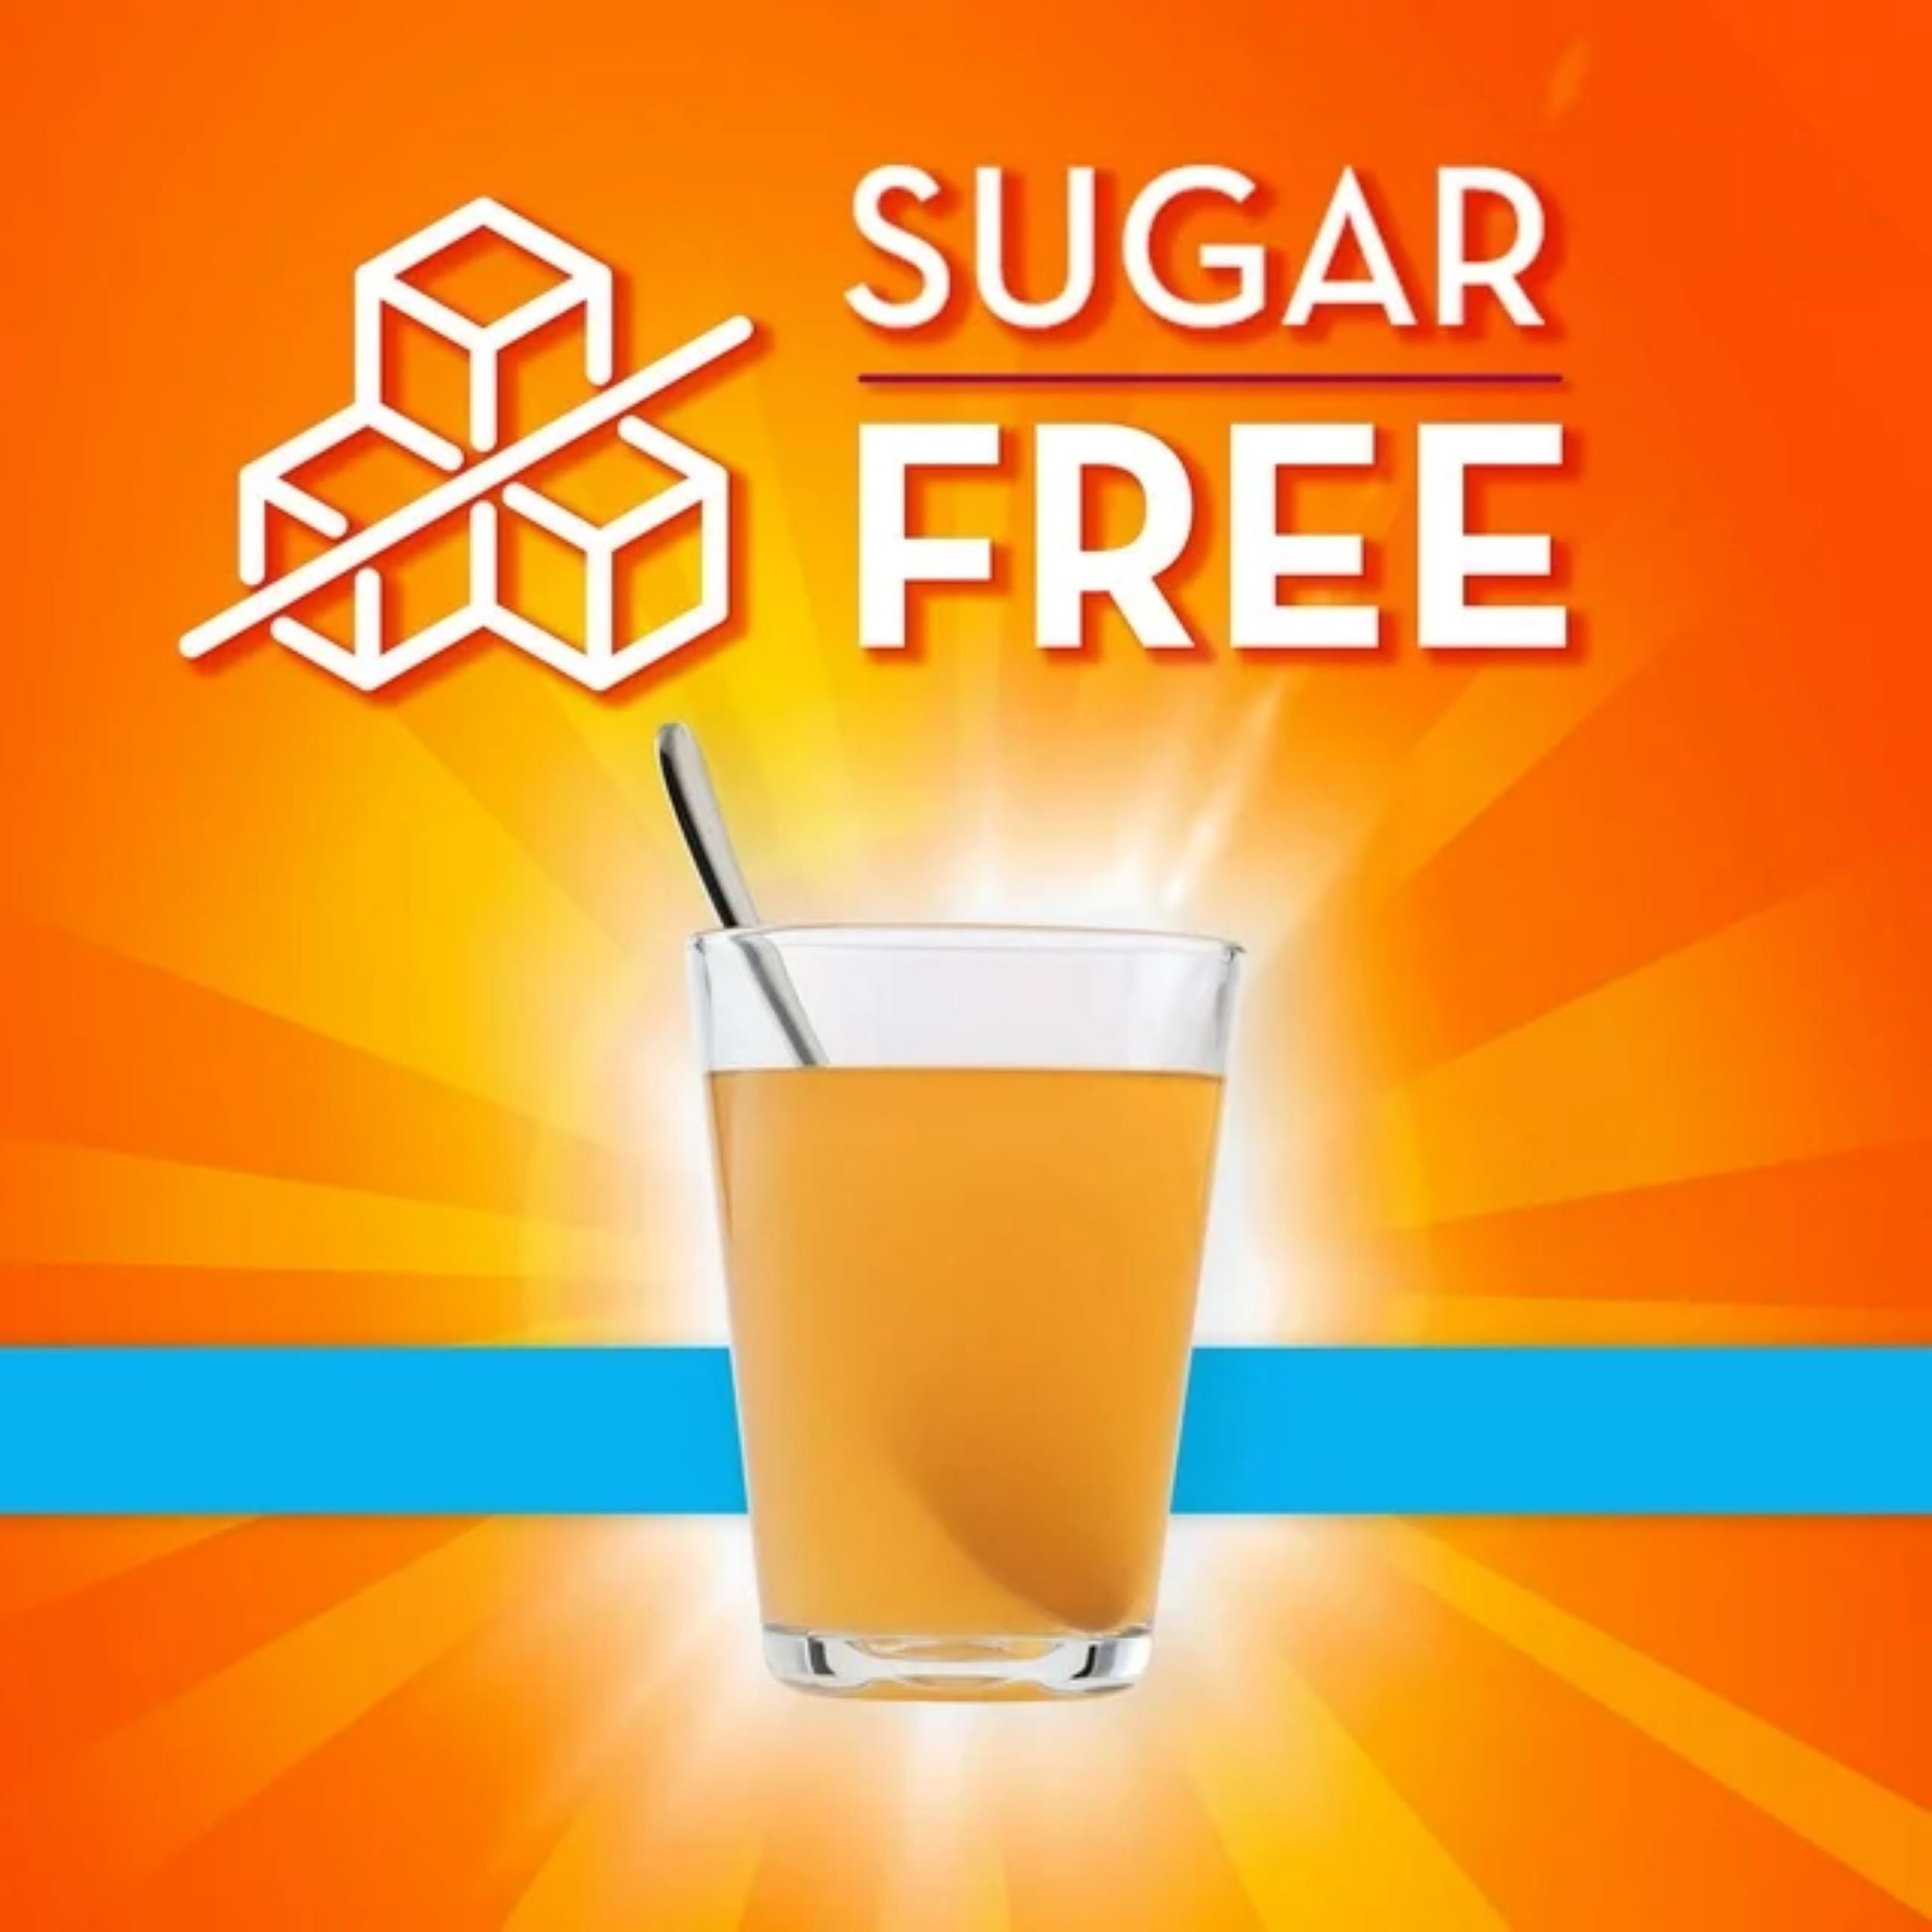 Metamucil Psyllium Husk Fiber Supplement for Digestive Health, Sugar Free, Orange, 114 Servings - image 5 of 8